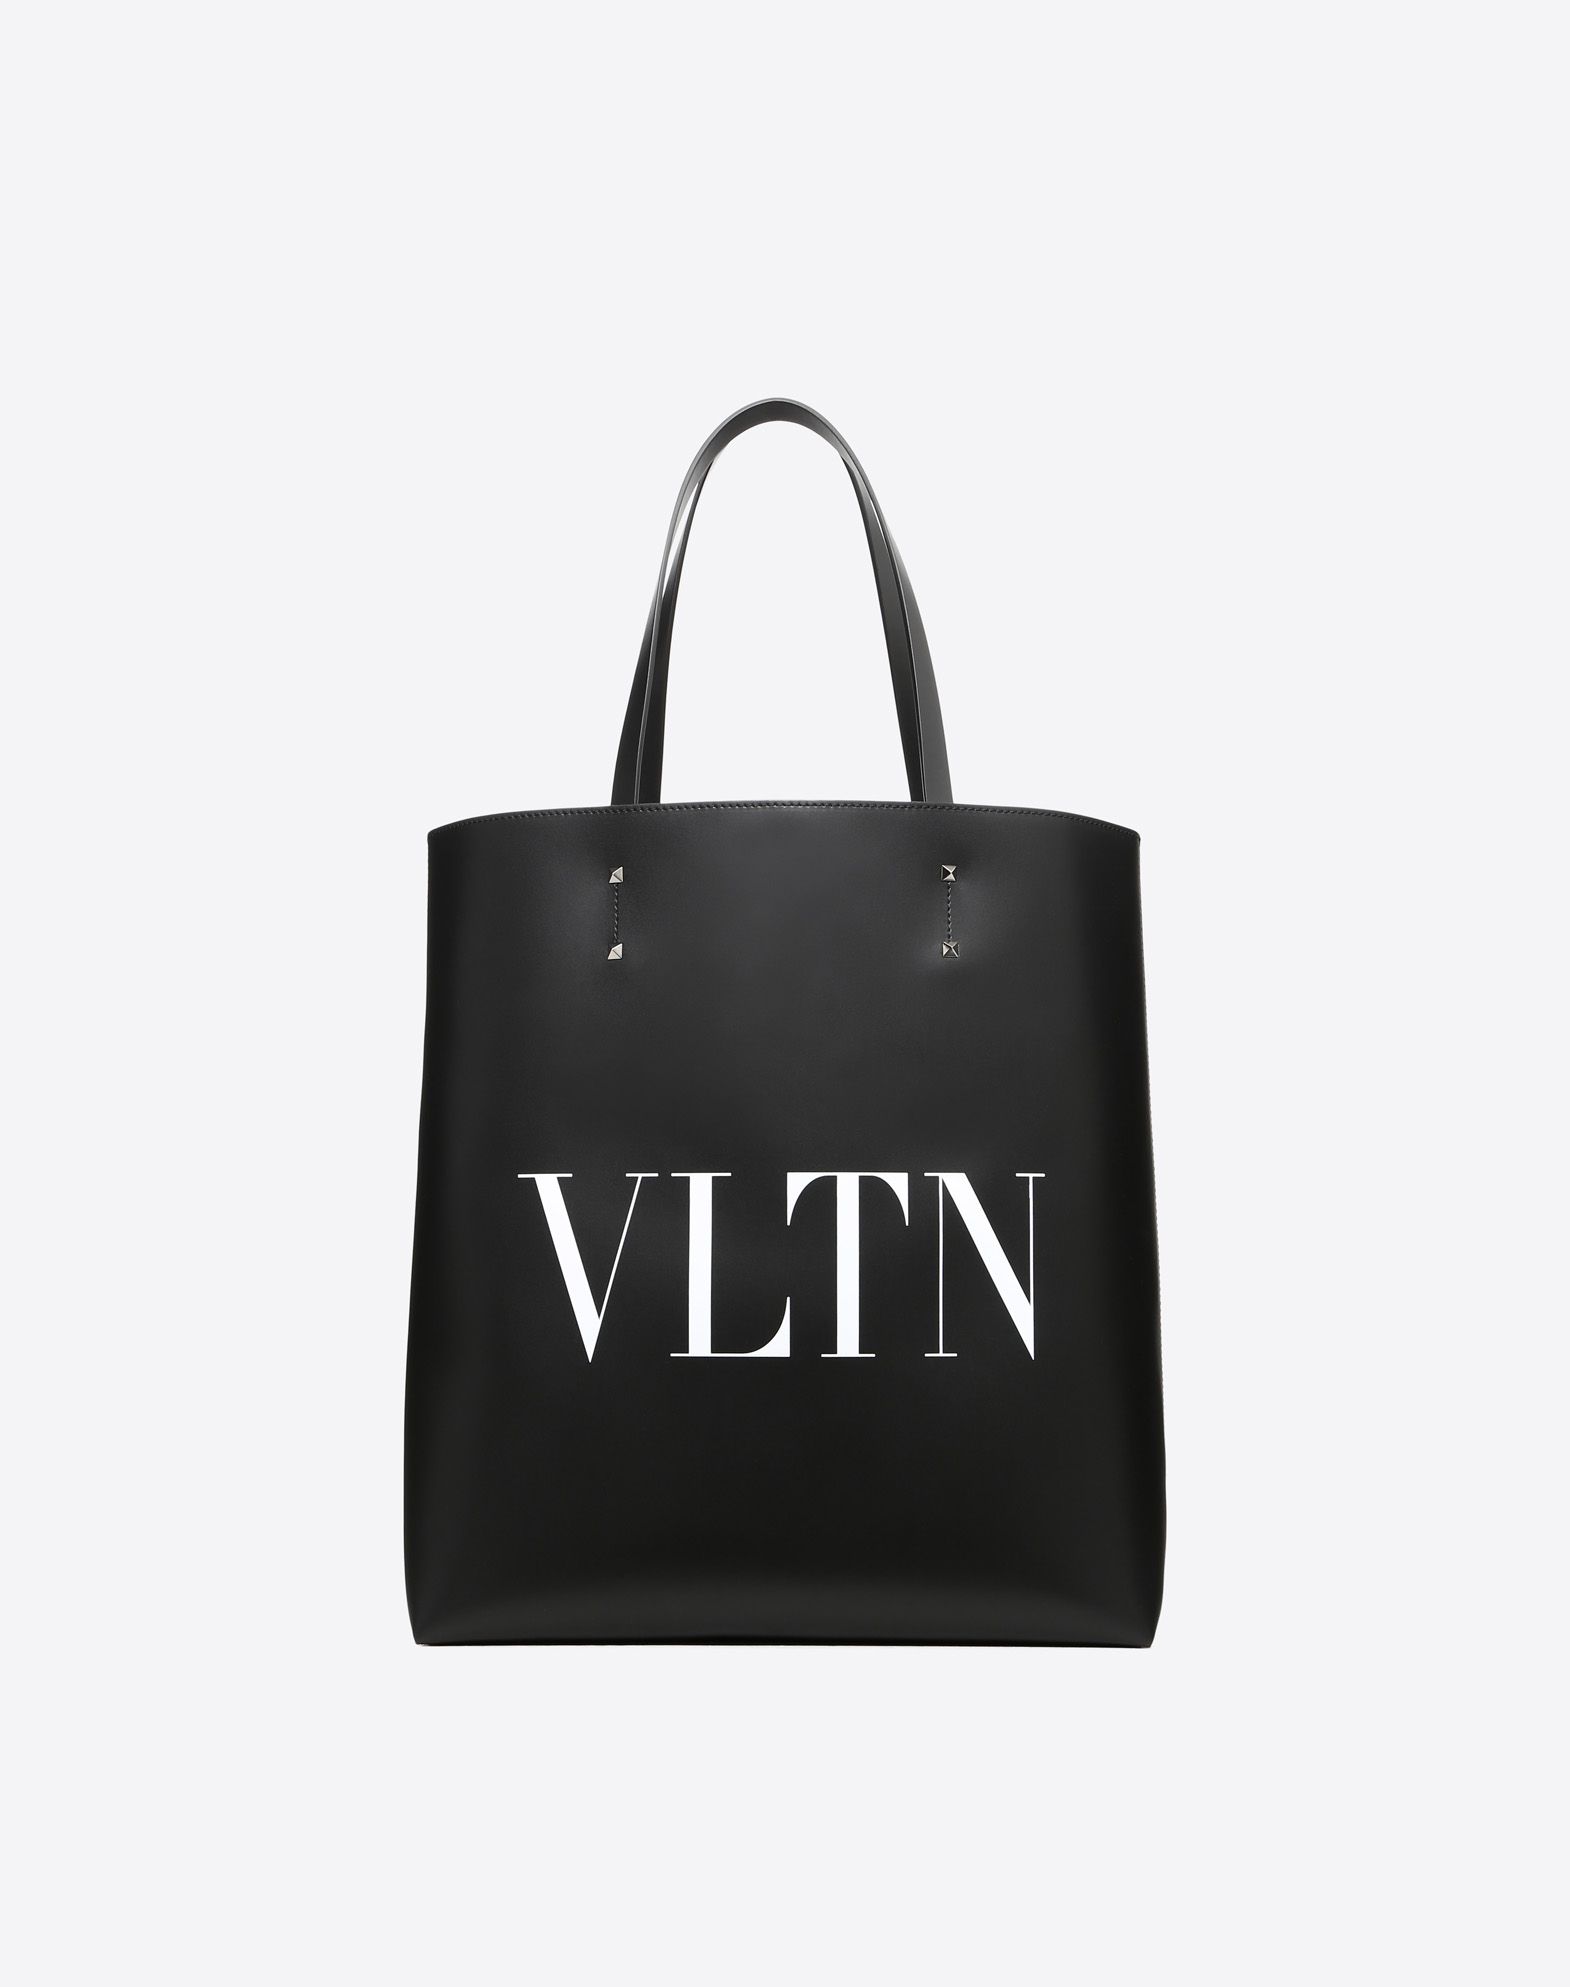 VALENTINO（ヴァレンチノ）VLTNシリーズ